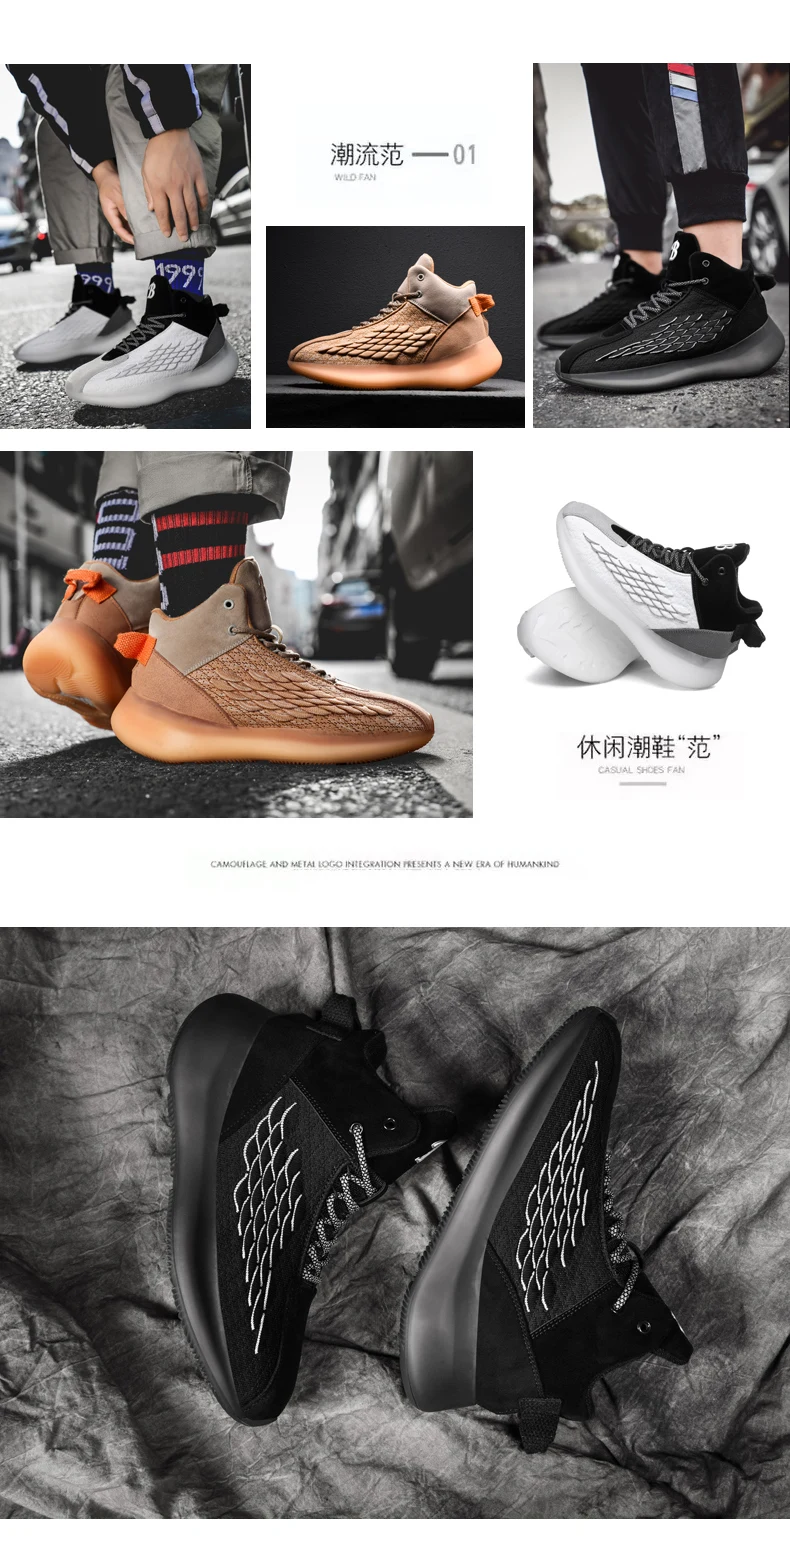 Мужские кроссовки Jorda, Баскетбольная обувь с высоким берцем Jorda 12 Jorda, ретро 11, Баскетбольная обувь Lebron, Баскетбольная обувь Hype, спортивная обувь